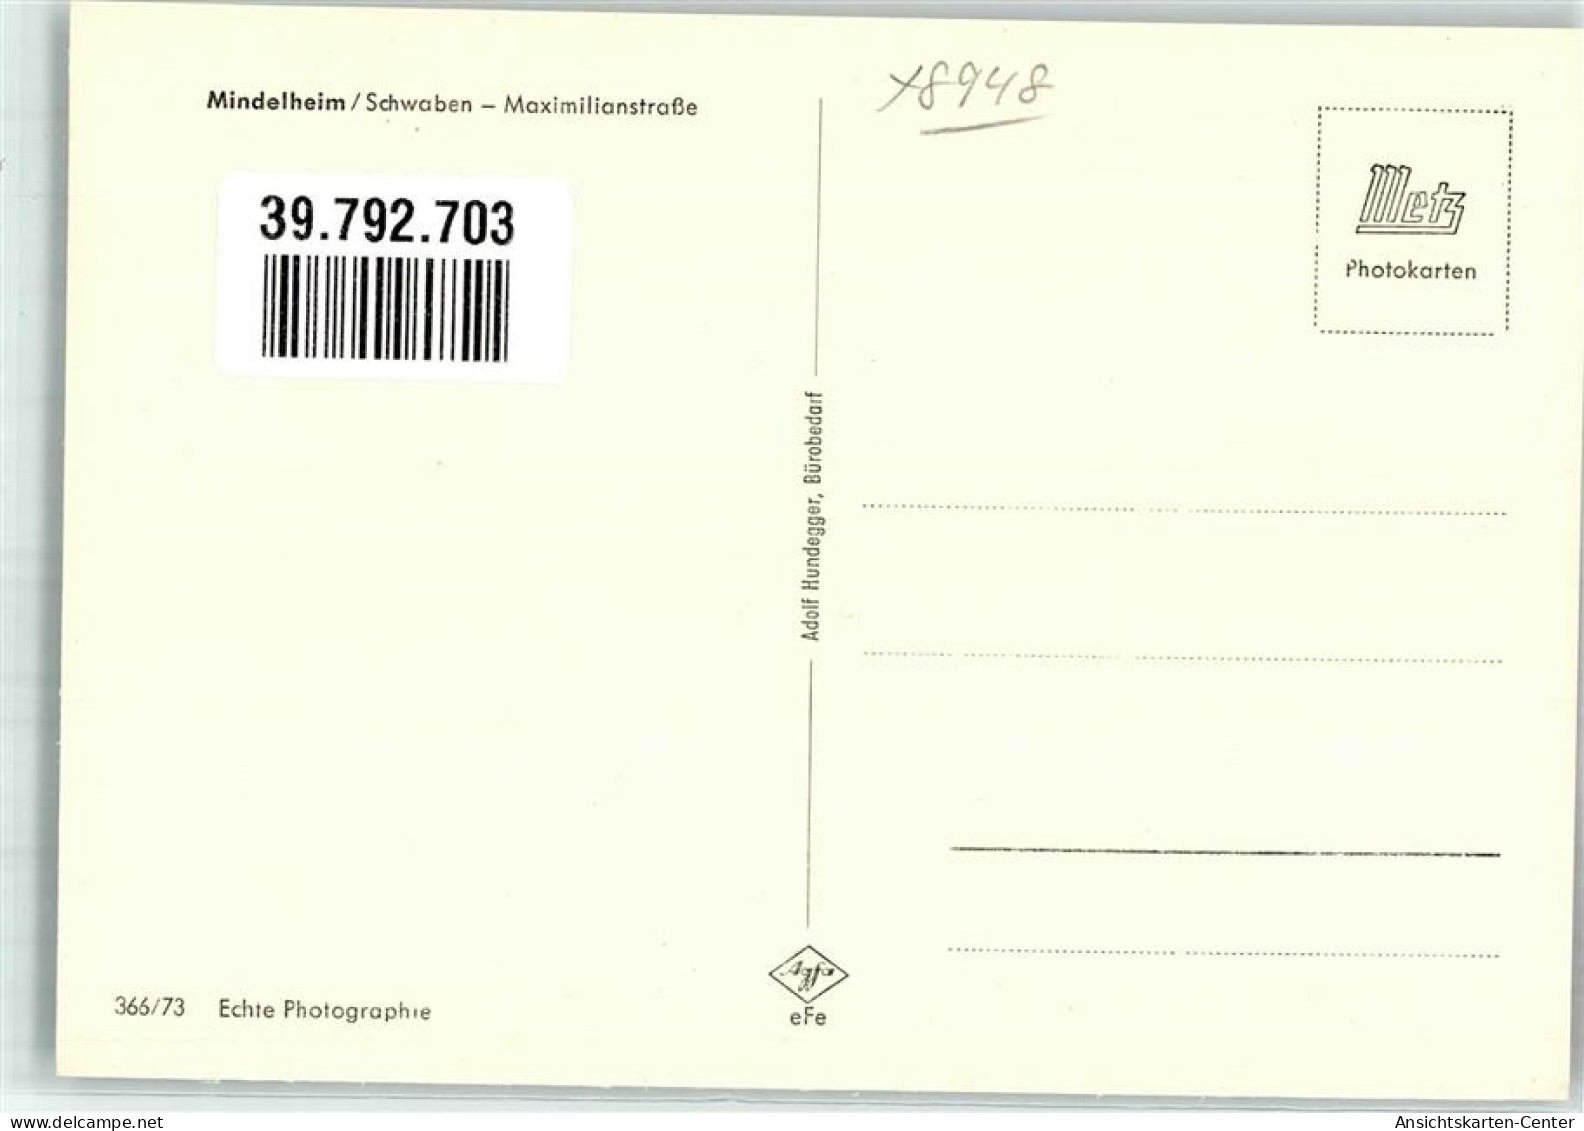 39792703 - Mindelheim - Mindelheim